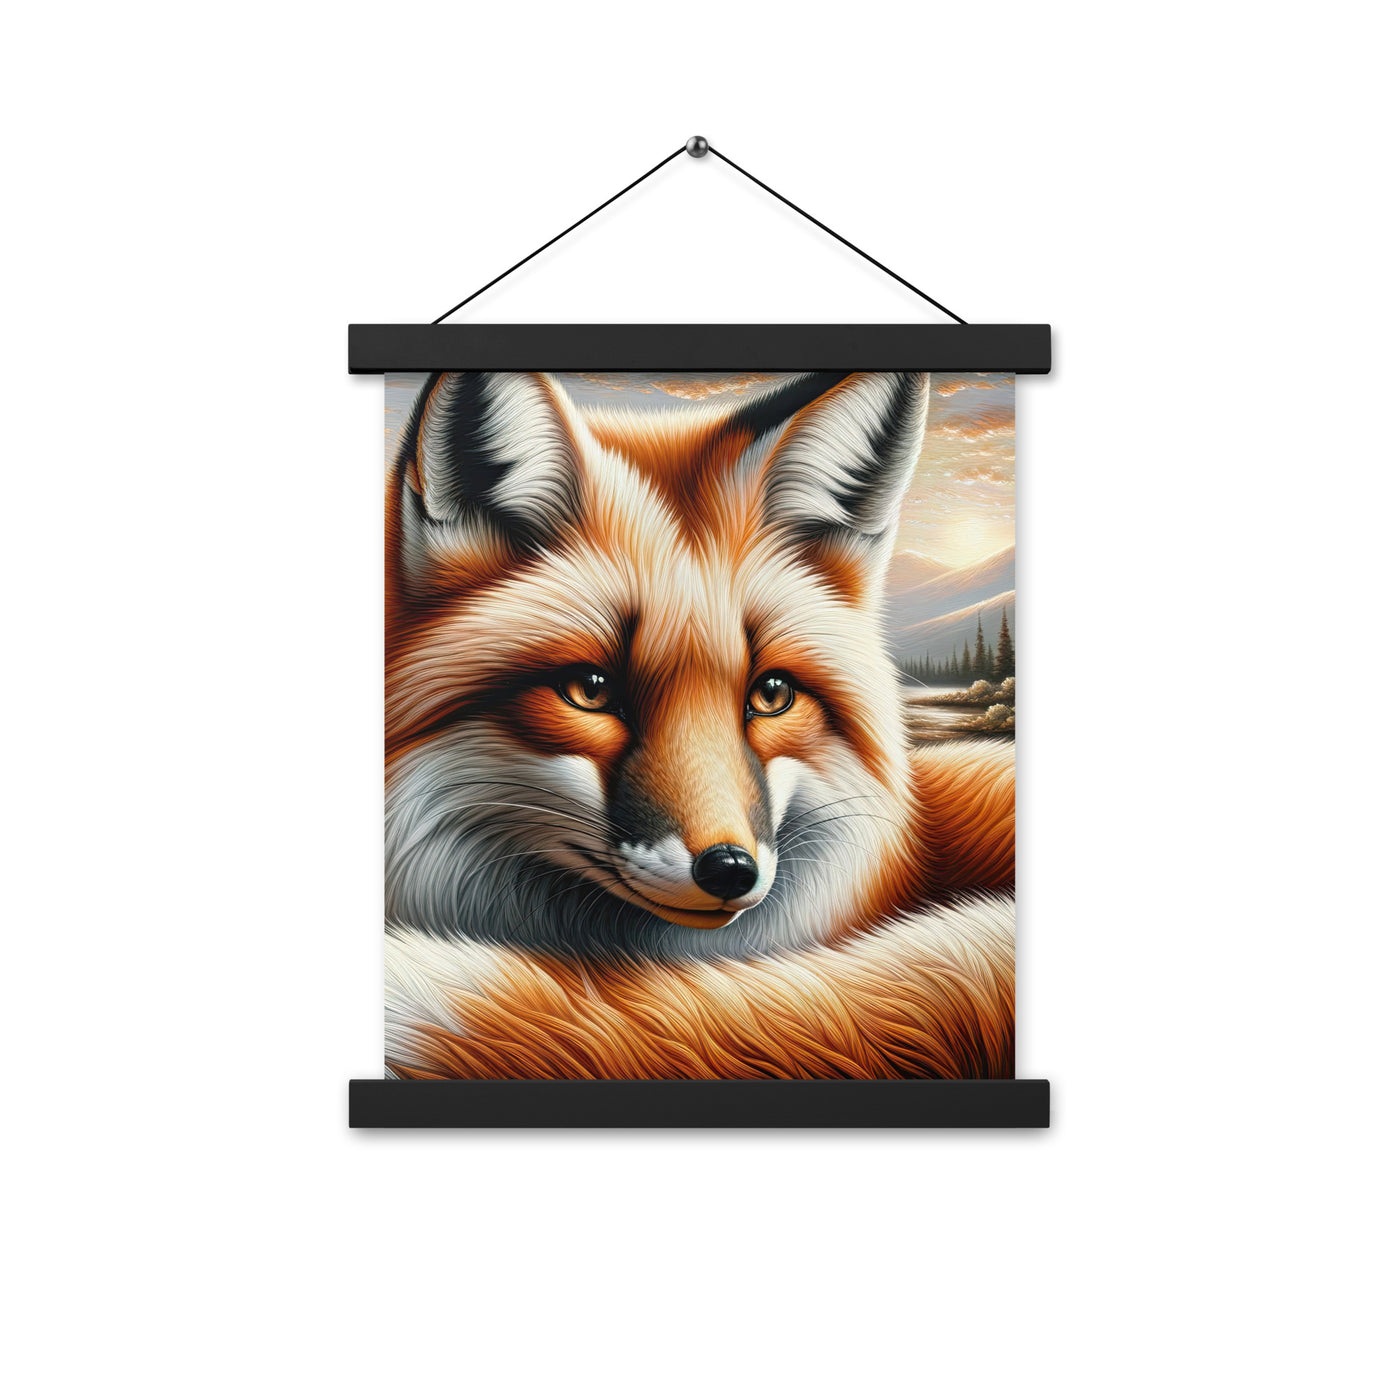 Ölgemälde eines nachdenklichen Fuchses mit weisem Blick - Premium Poster mit Aufhängung camping xxx yyy zzz 27.9 x 35.6 cm